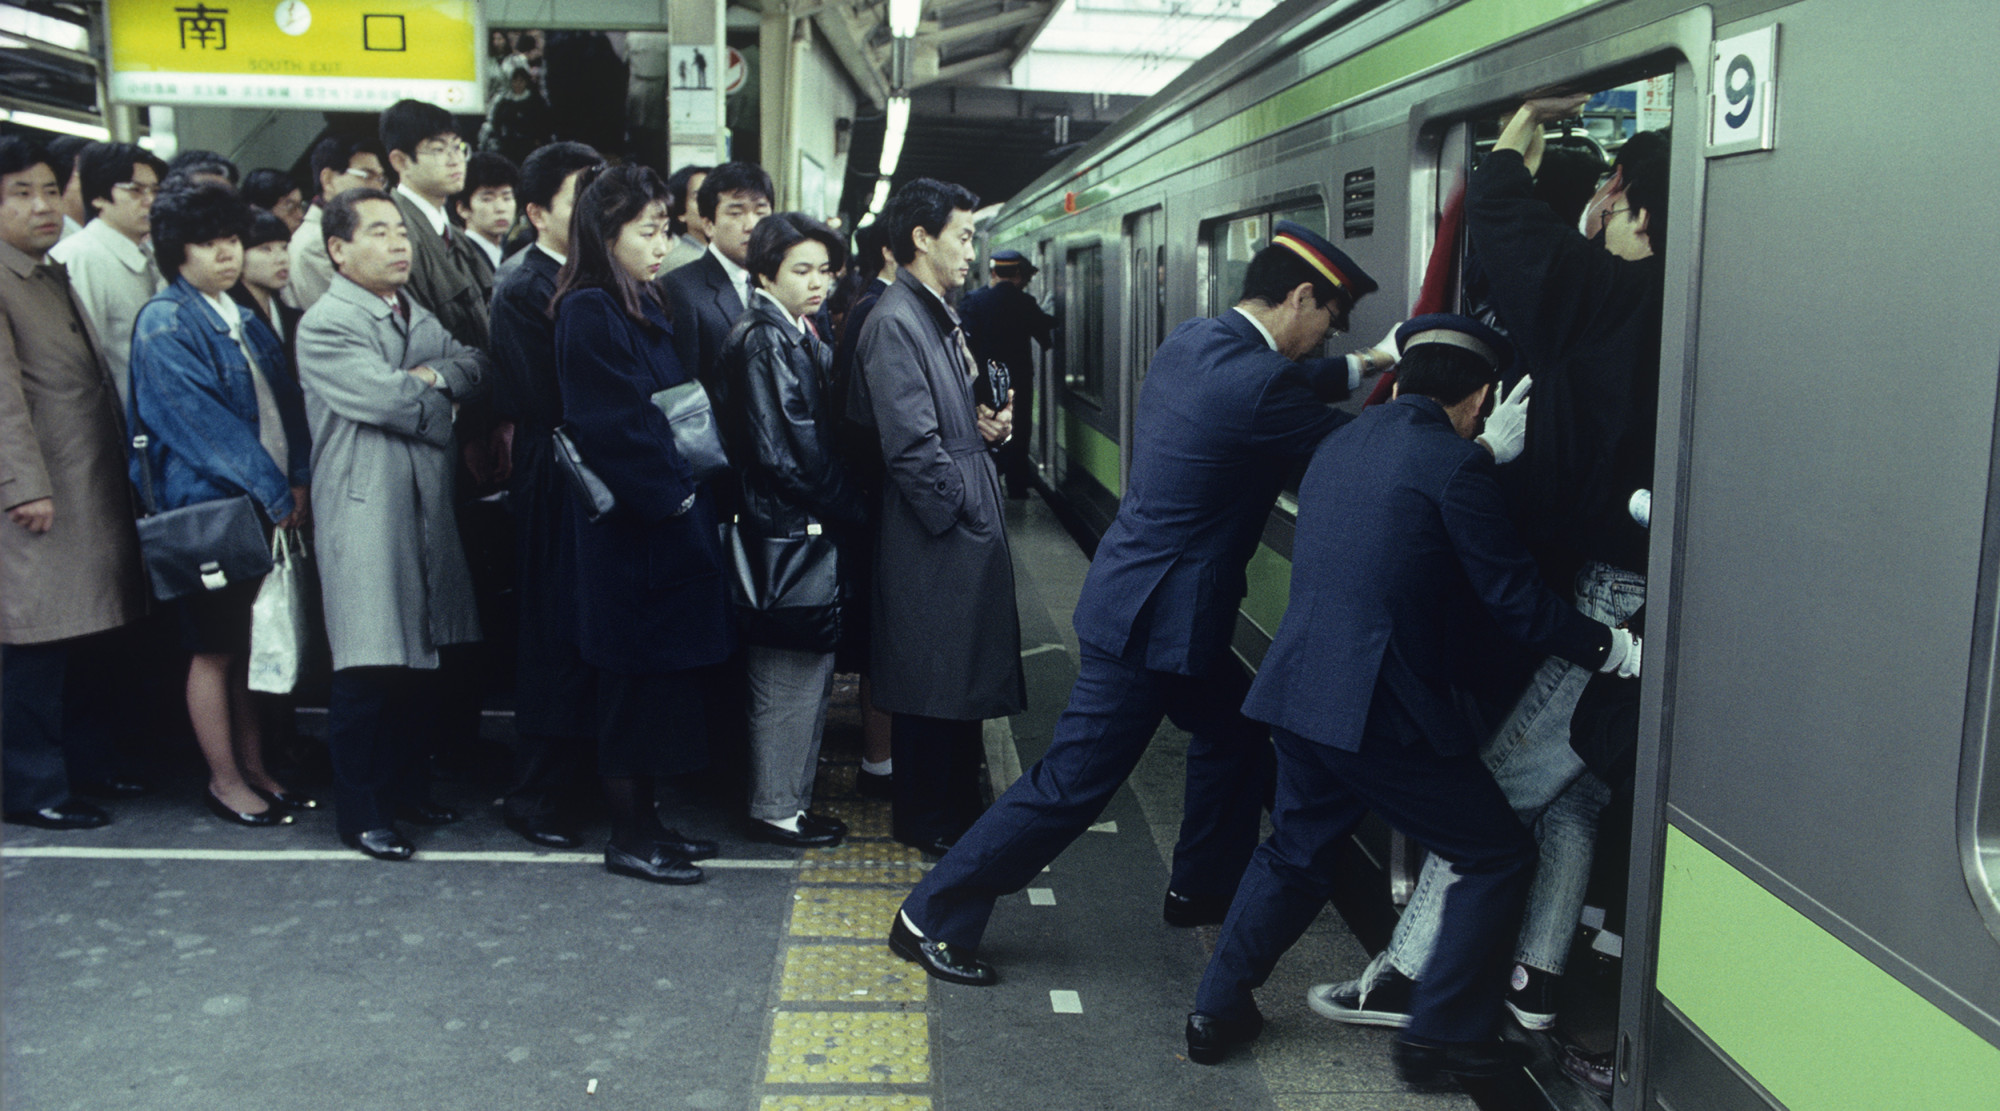 Tłum ludzi w japońskim metrze, konduktorzy upychają pasażerów